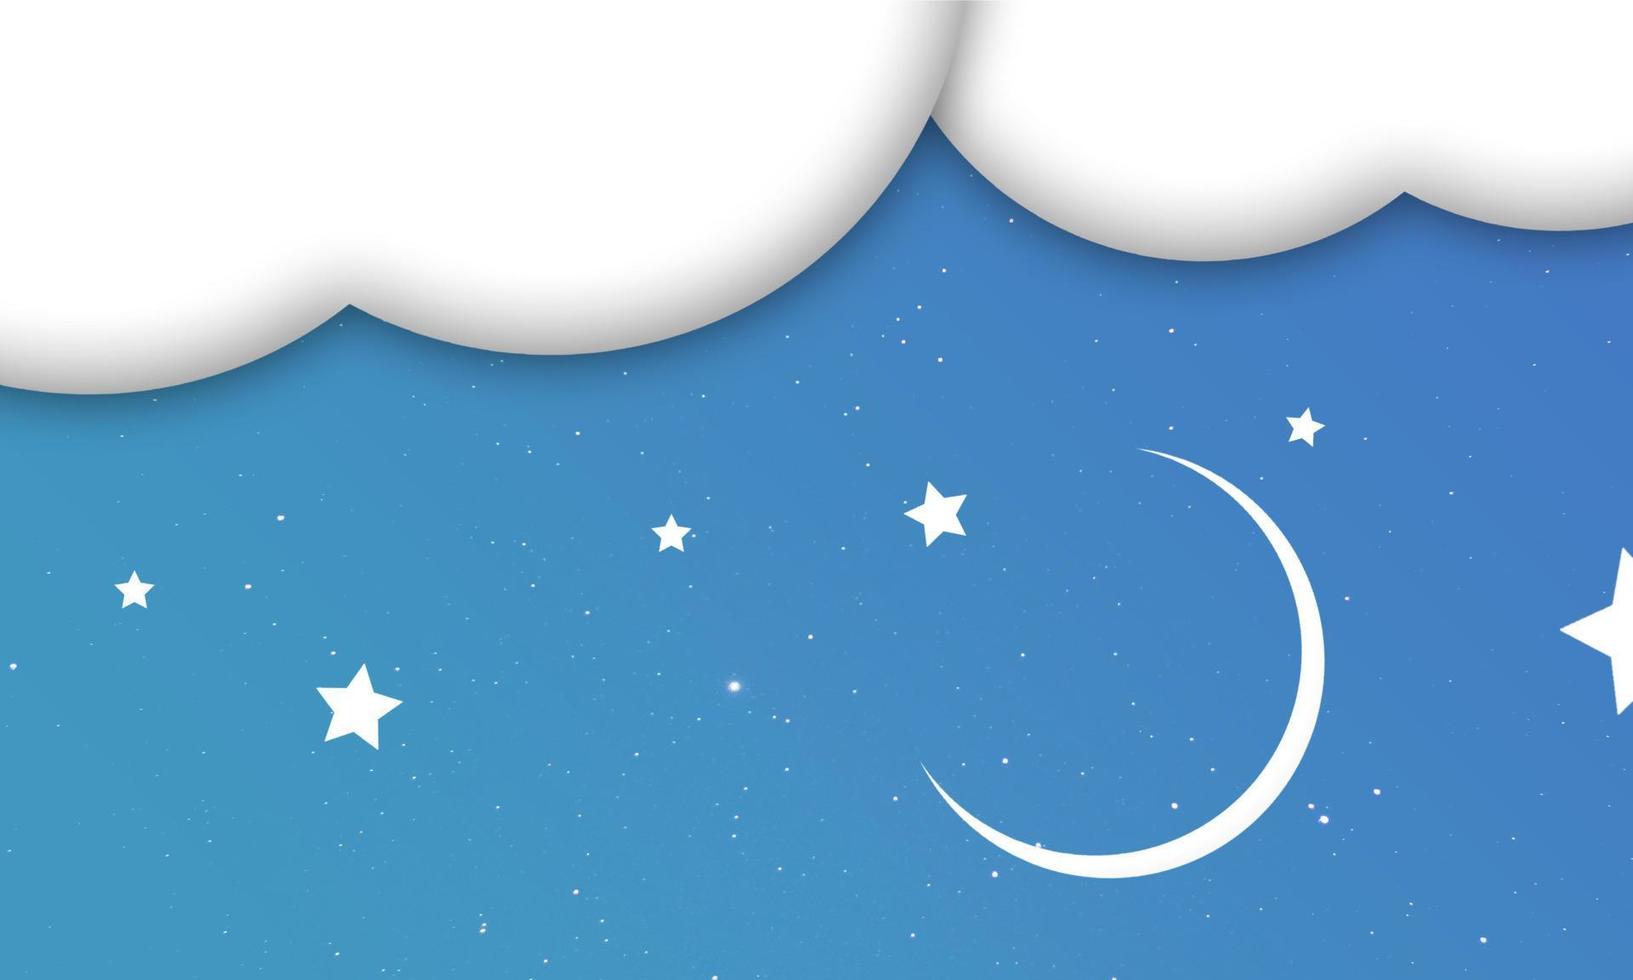 blauwe lucht met wolken en sterren, maan achtergrondillustratie vector